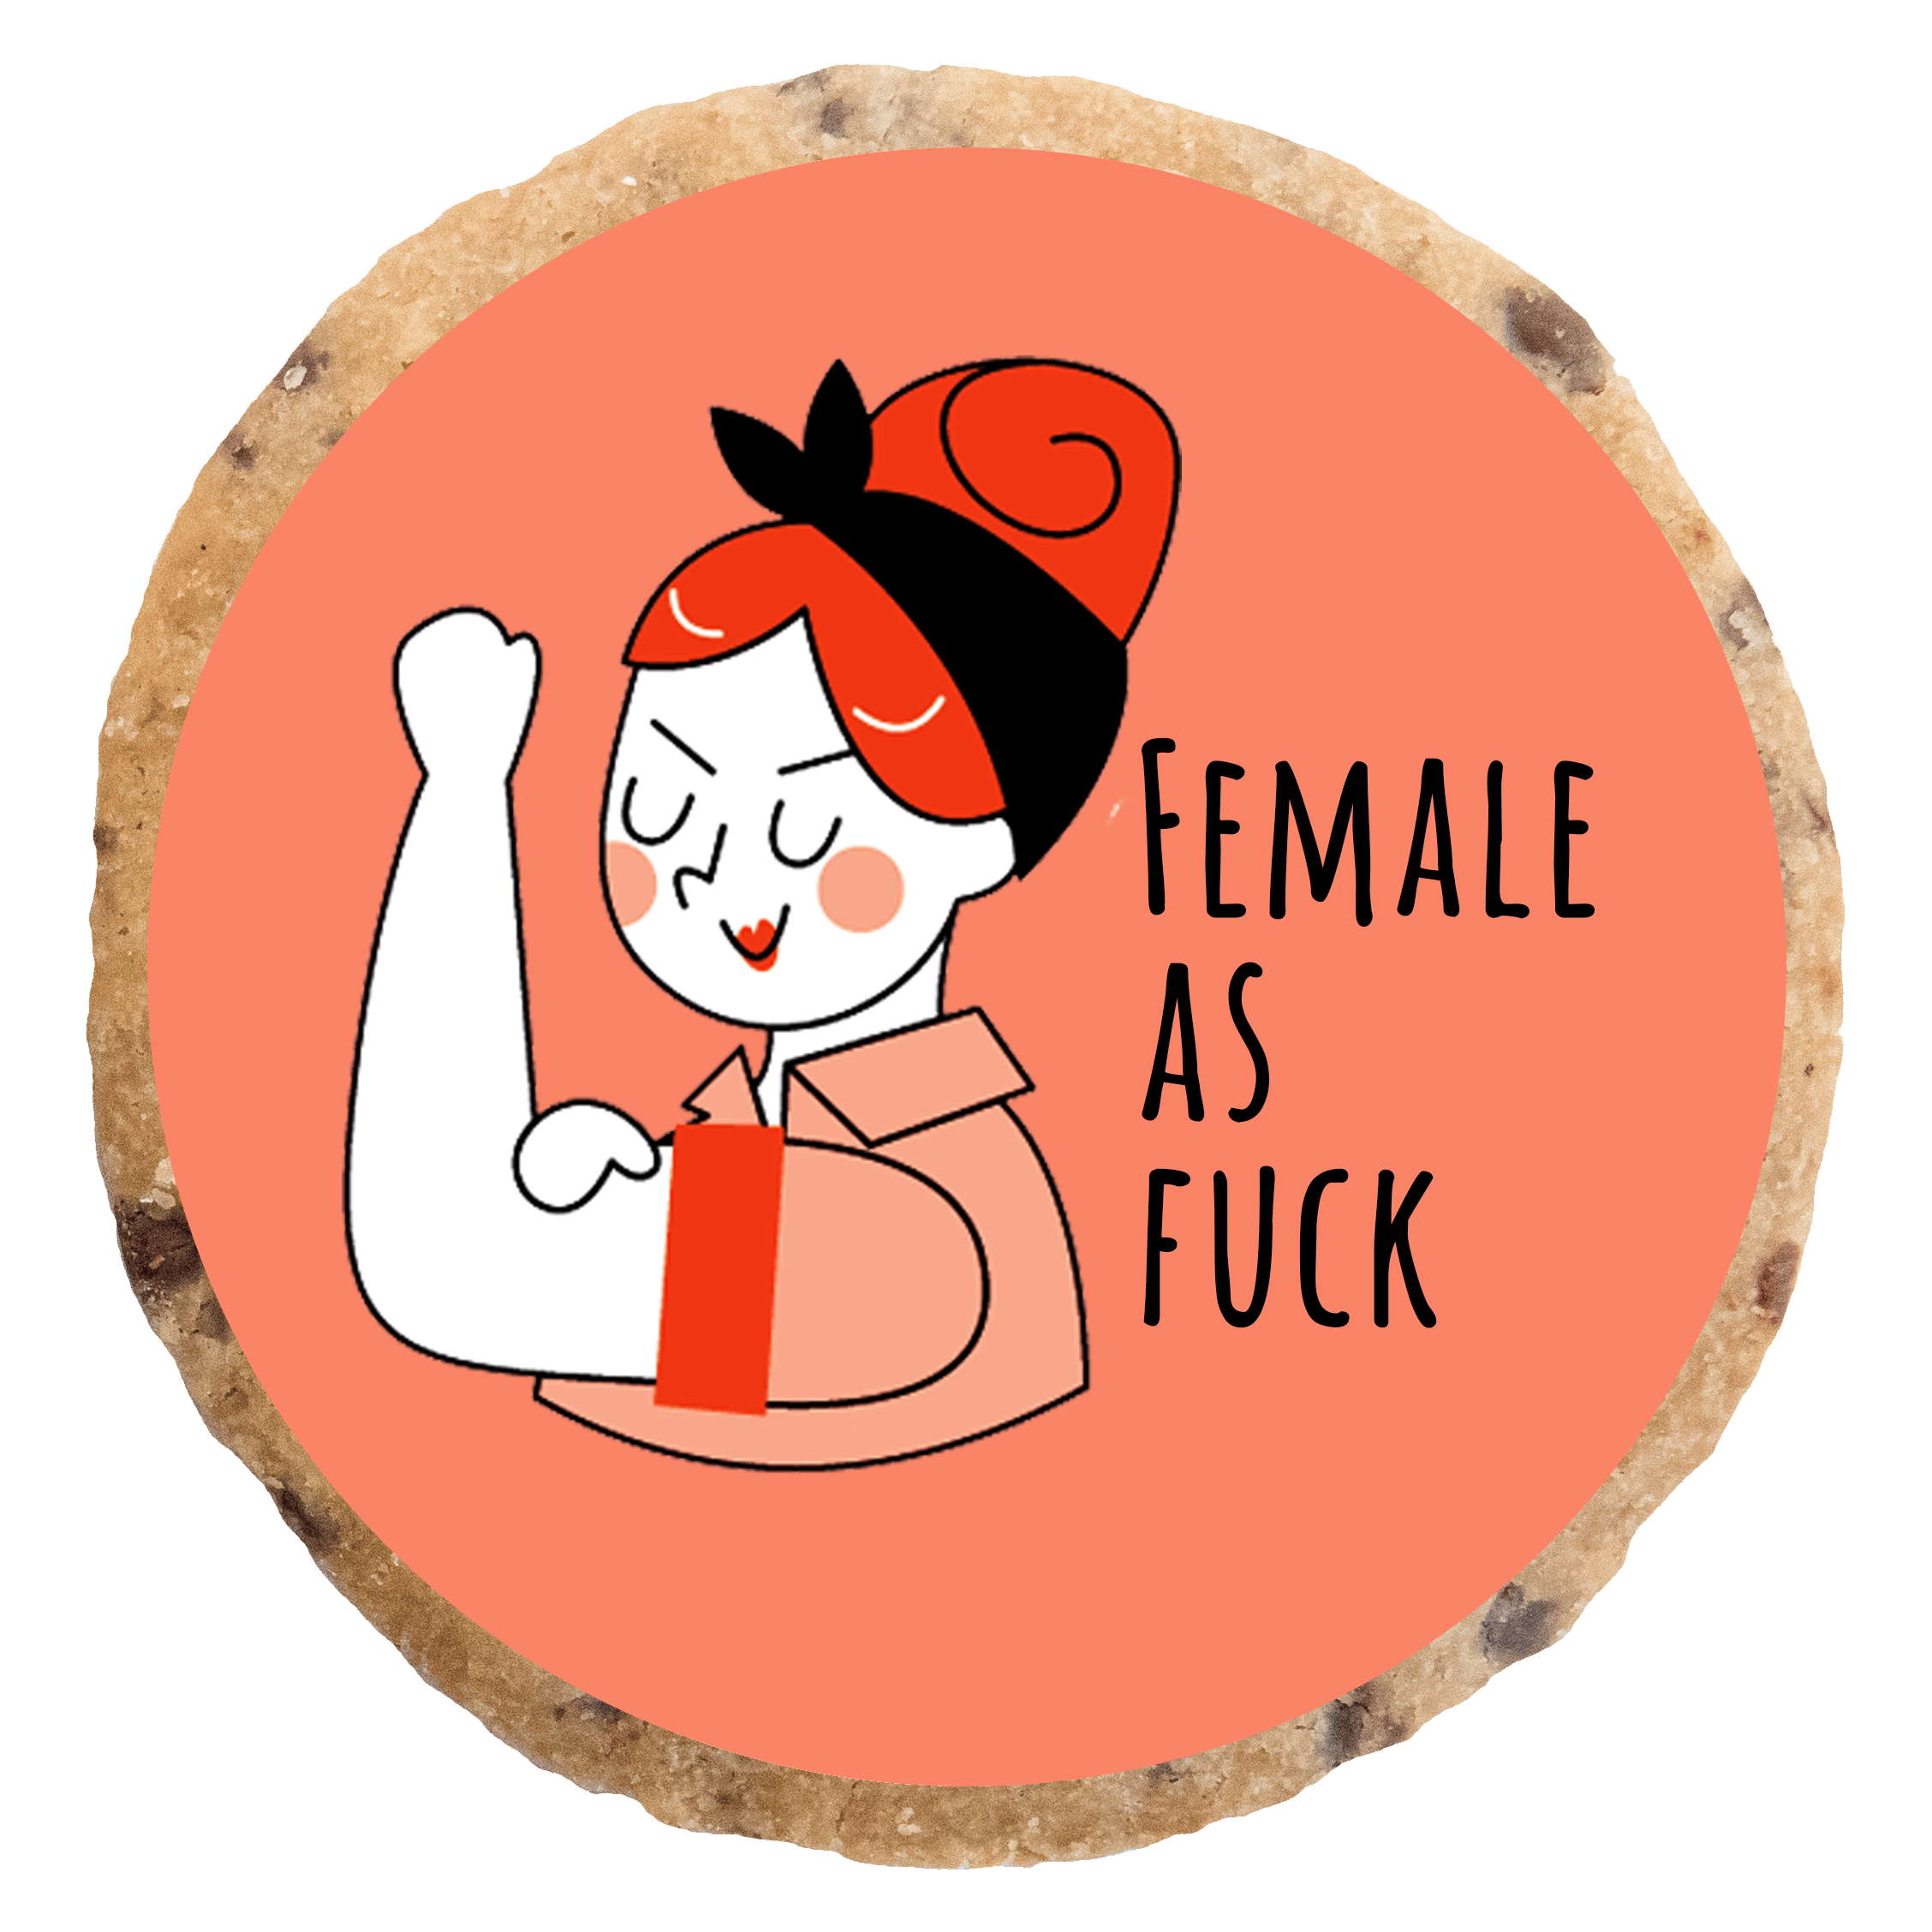 "Female as fuck" MotivKEKS